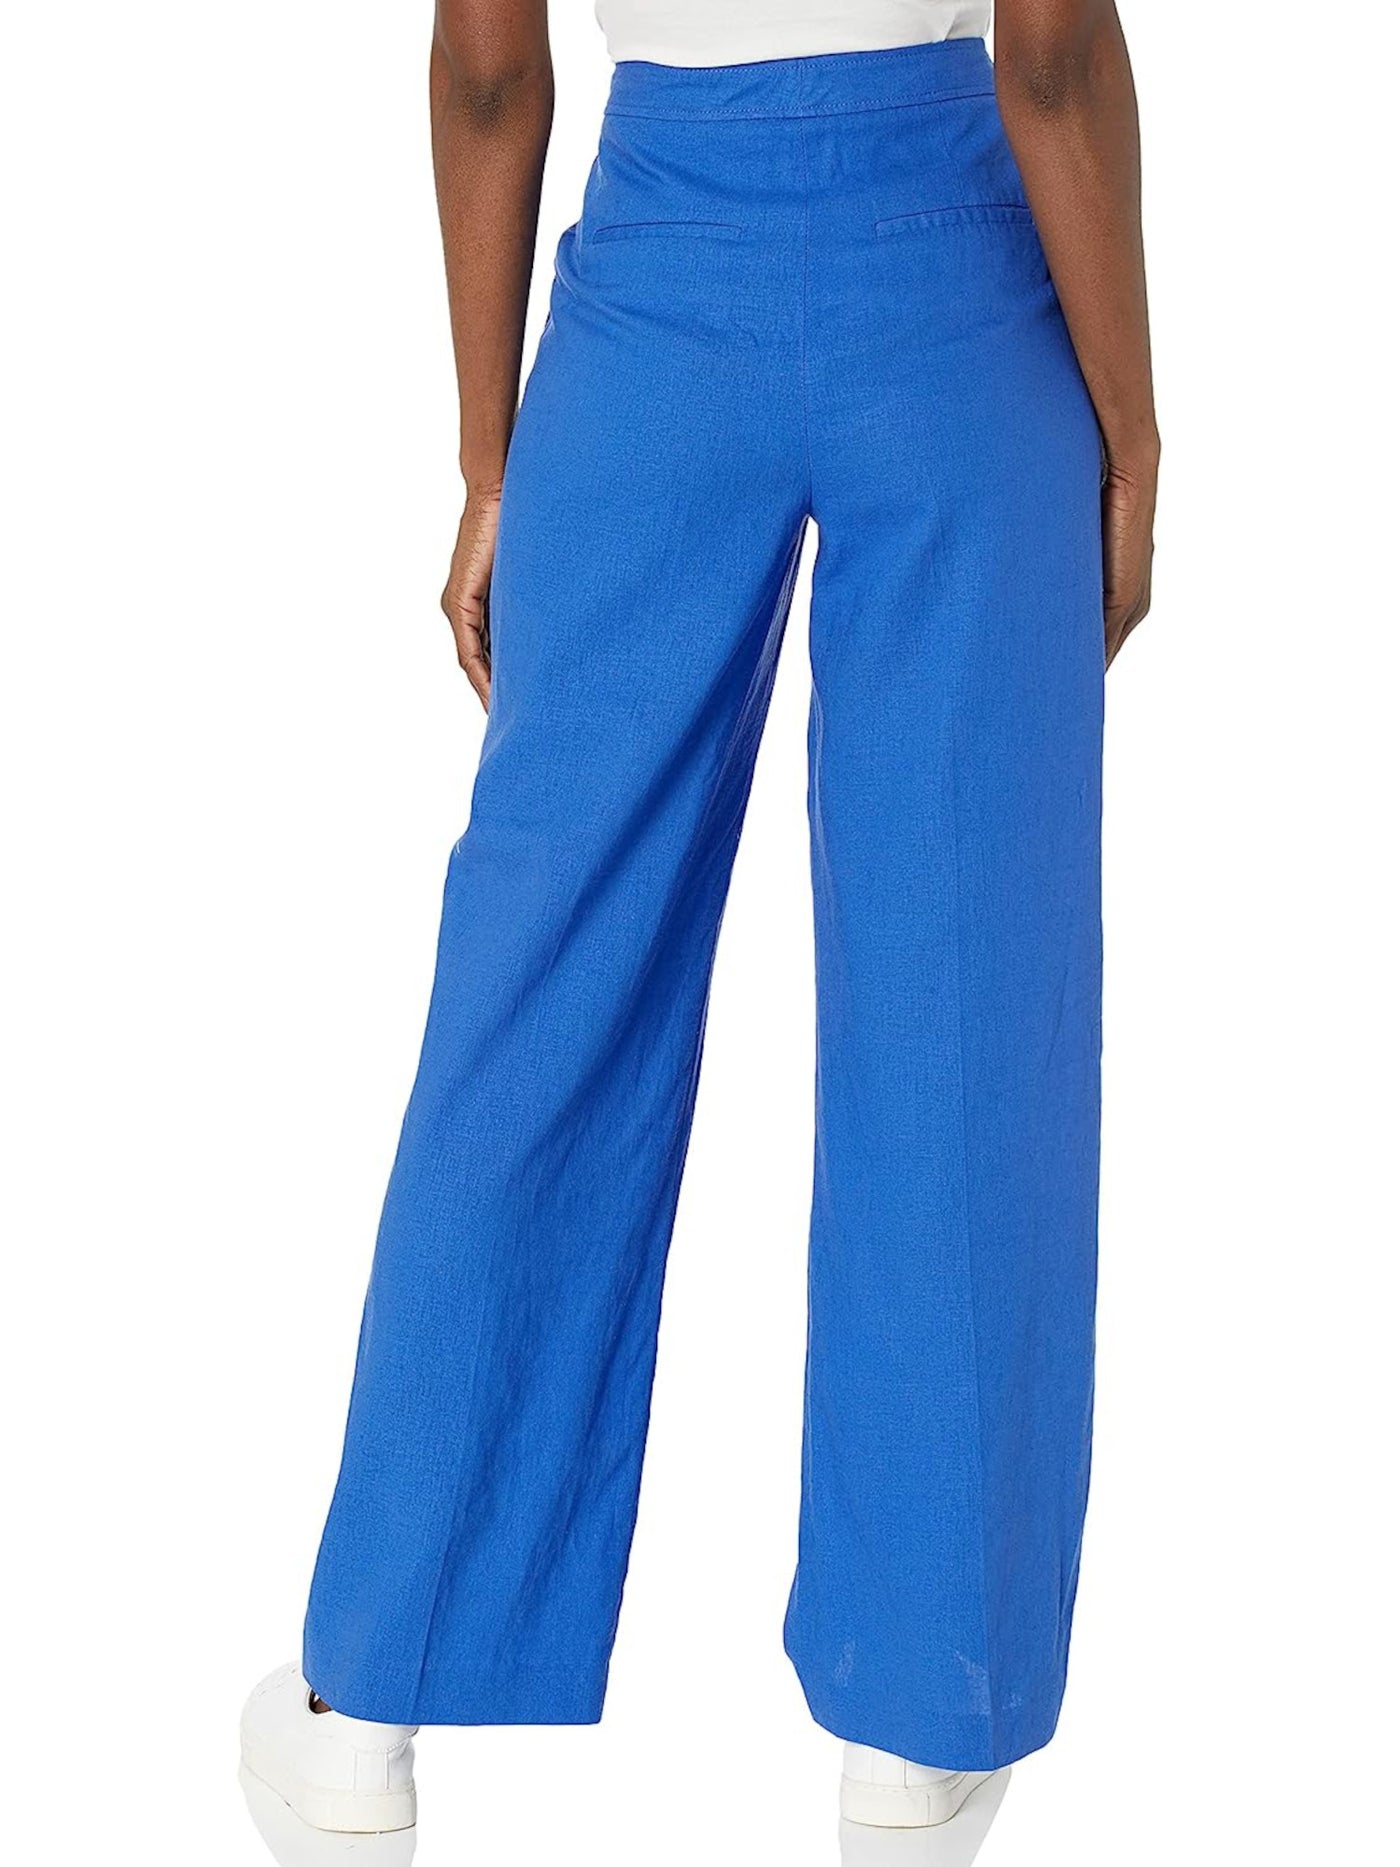 ANNE KLEIN Womens Blue Zippered Semi Sheer High Waist Pants 10